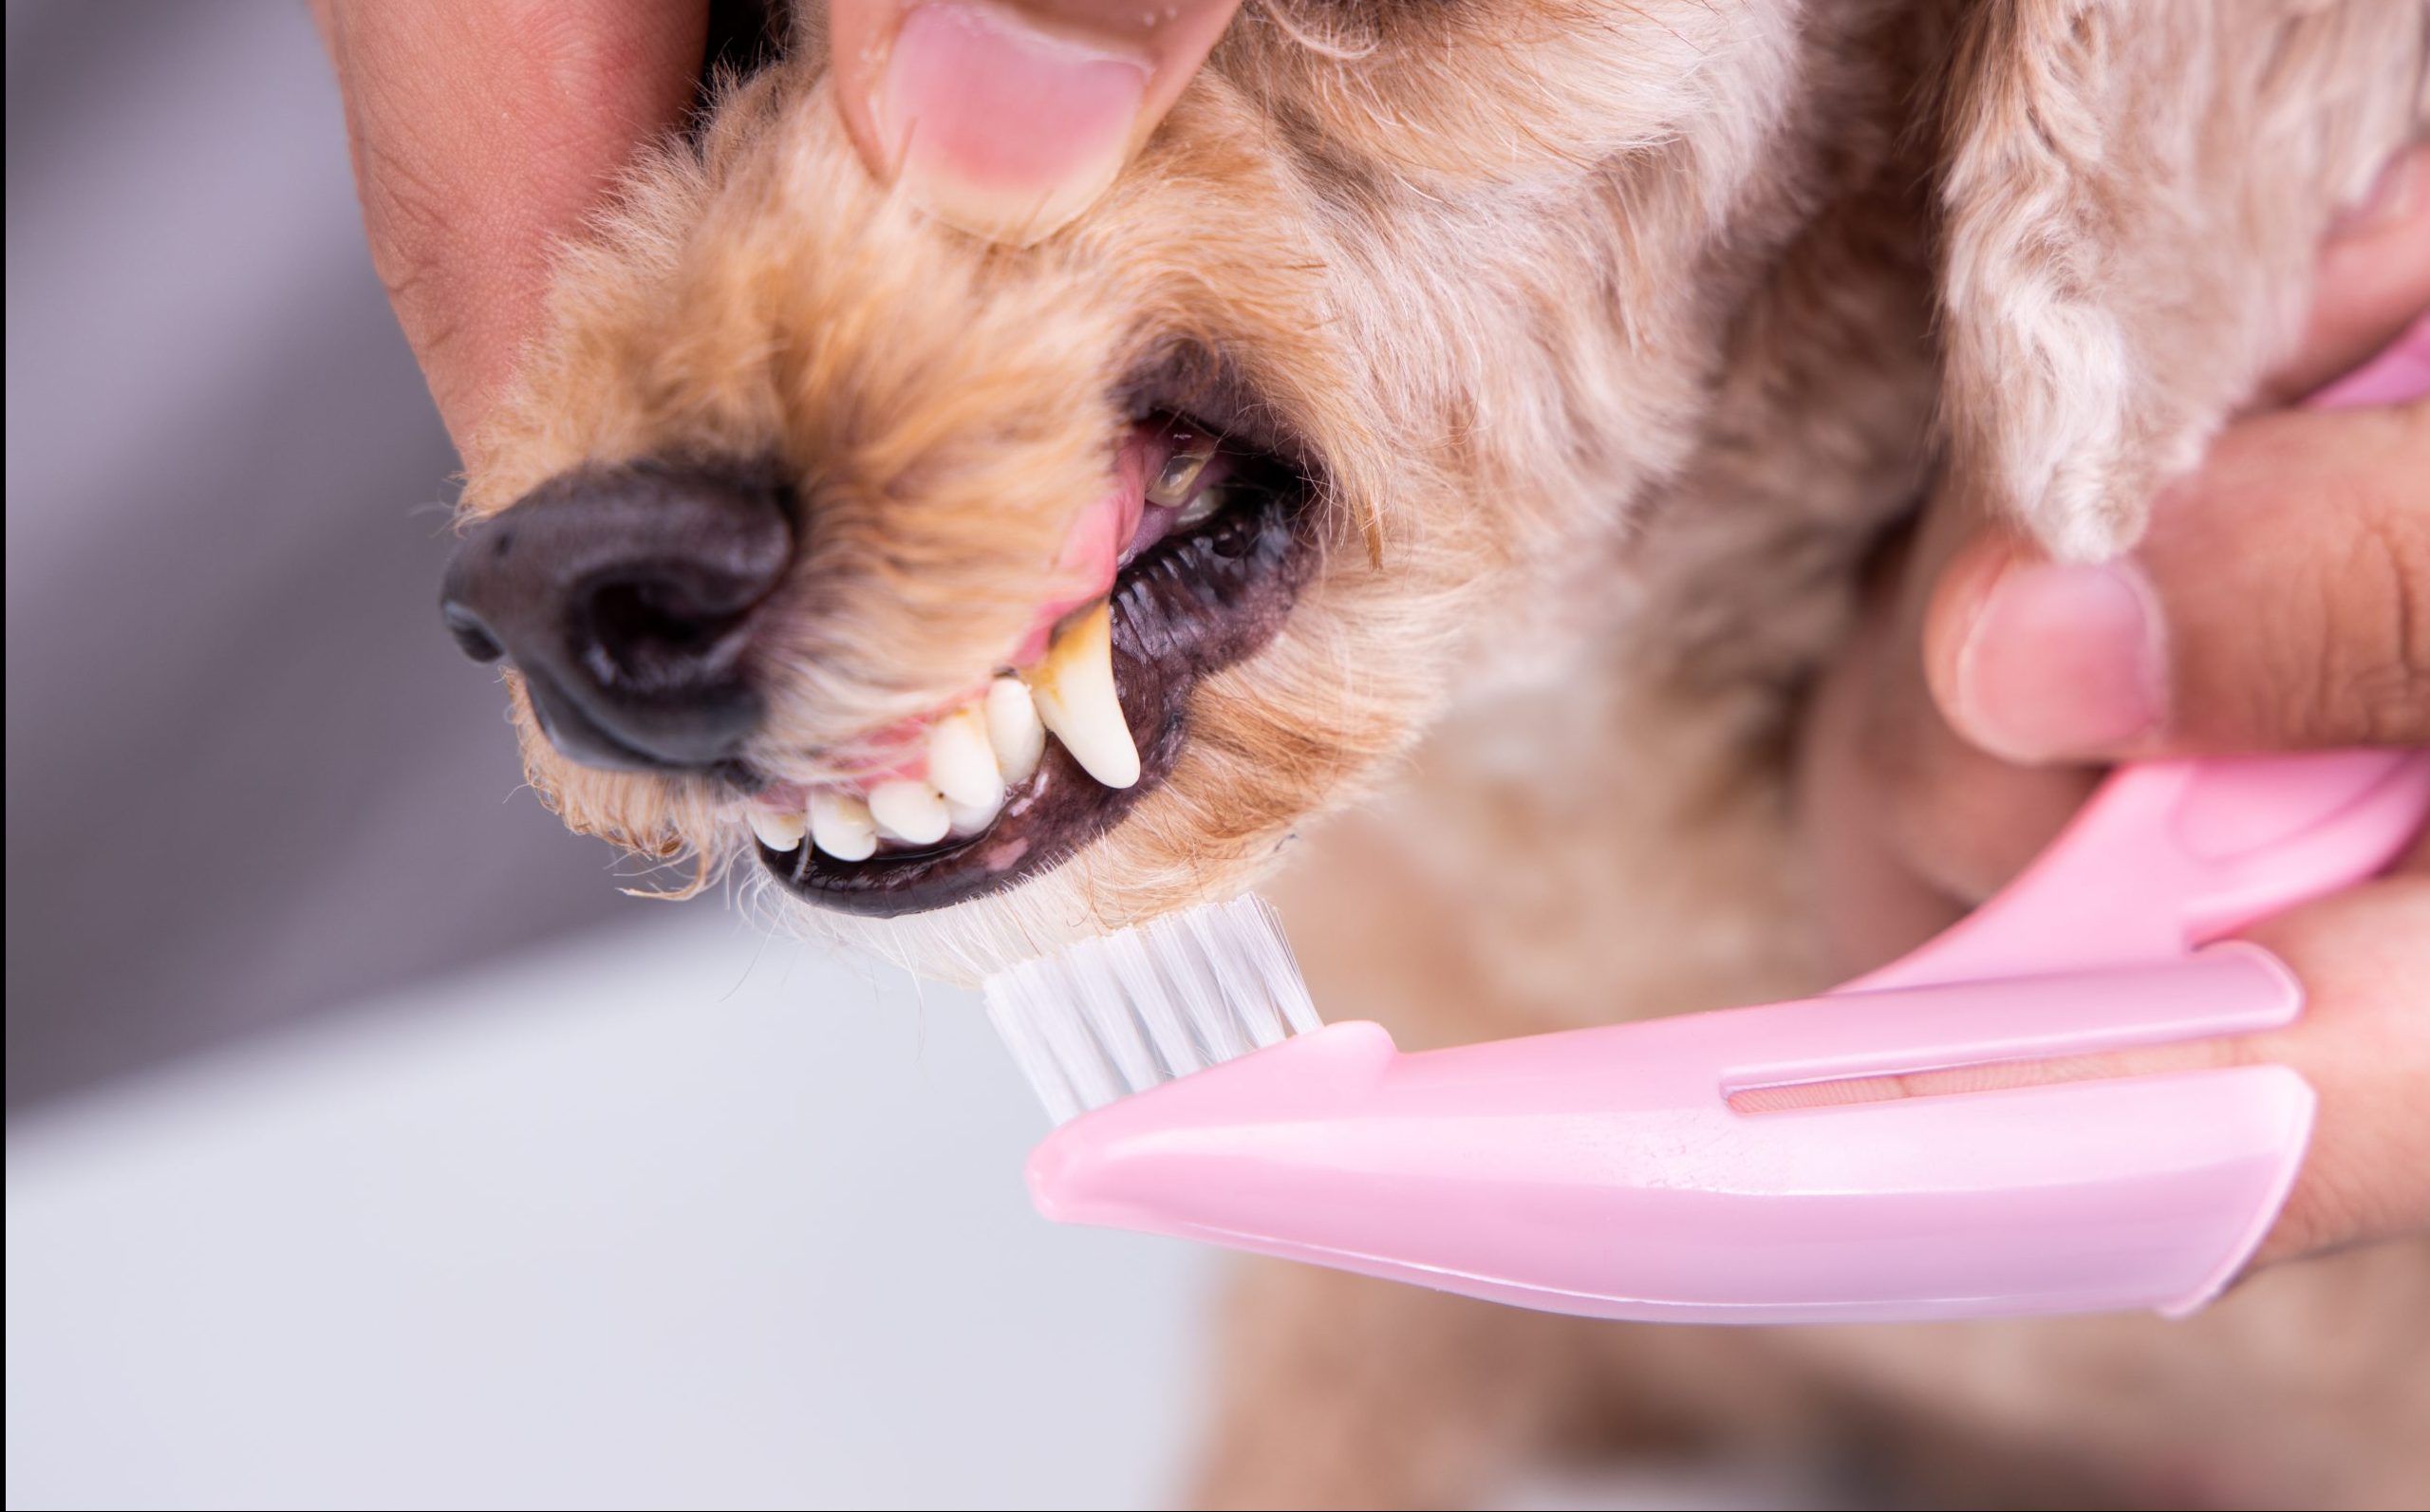 Keeping Your Dog’s Teeth Healthy